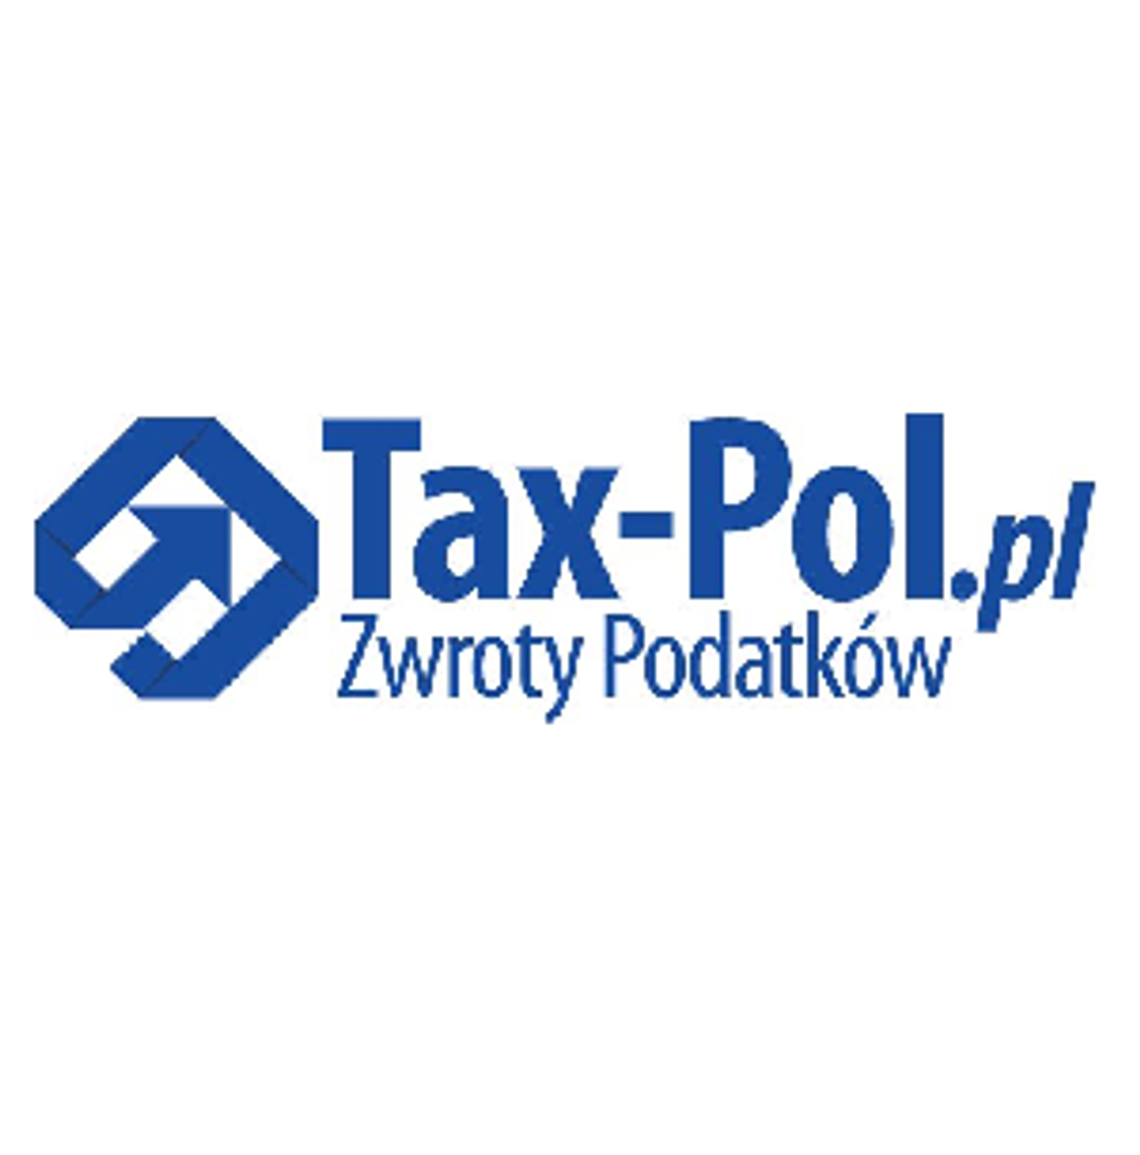 Tax-Pol